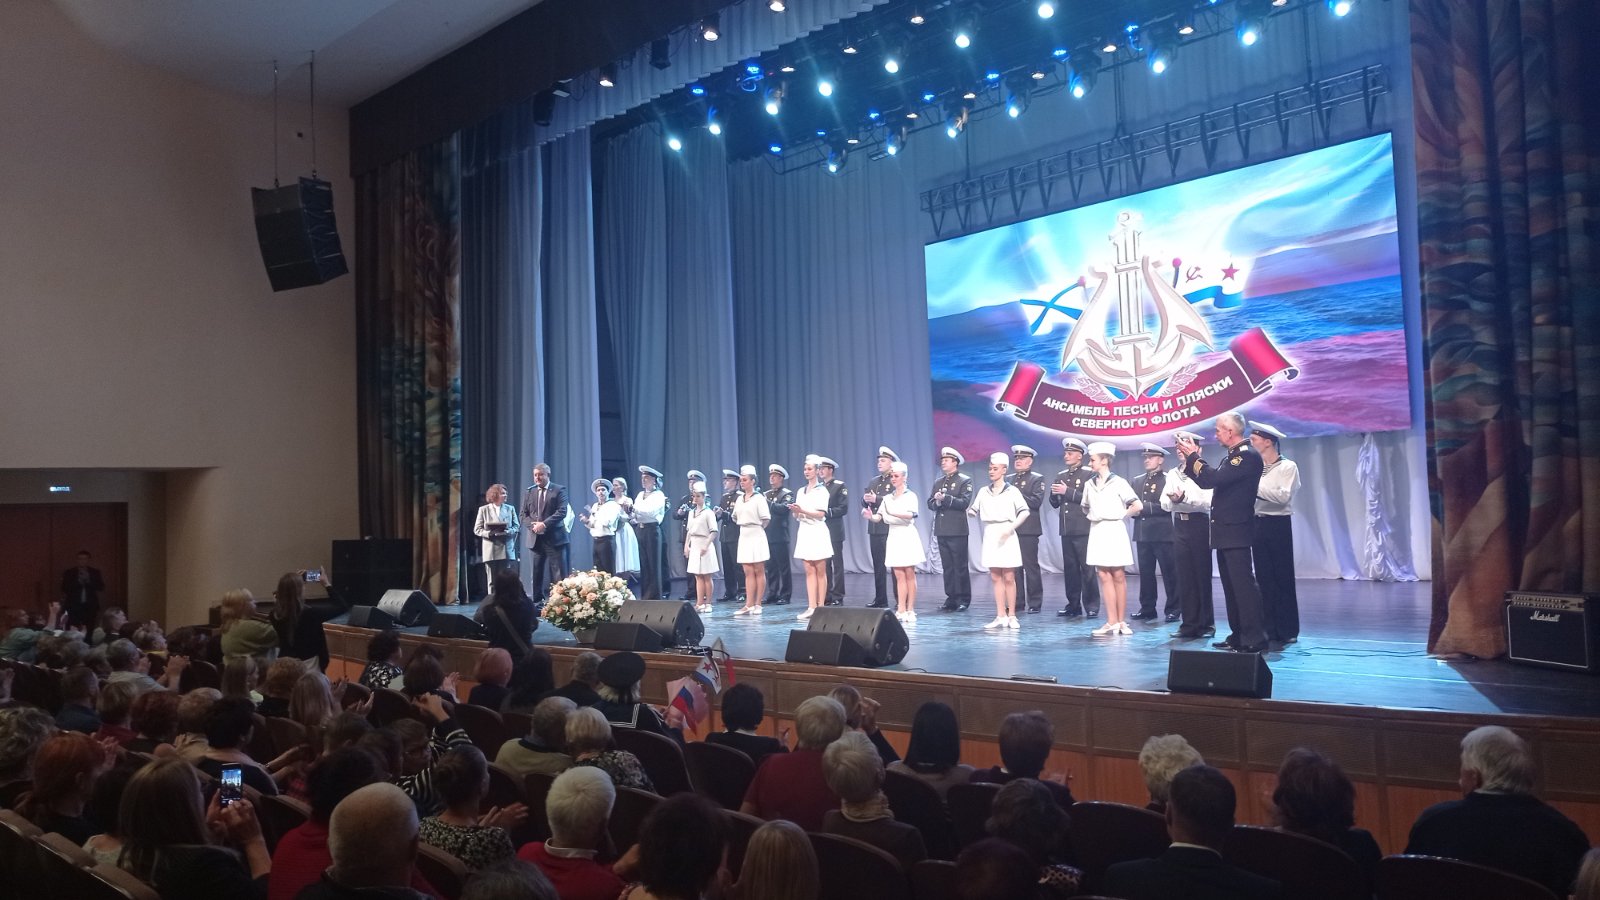 Руководителю ансамбля Северного флота вручили медаль «Брянск - город воинской славы»